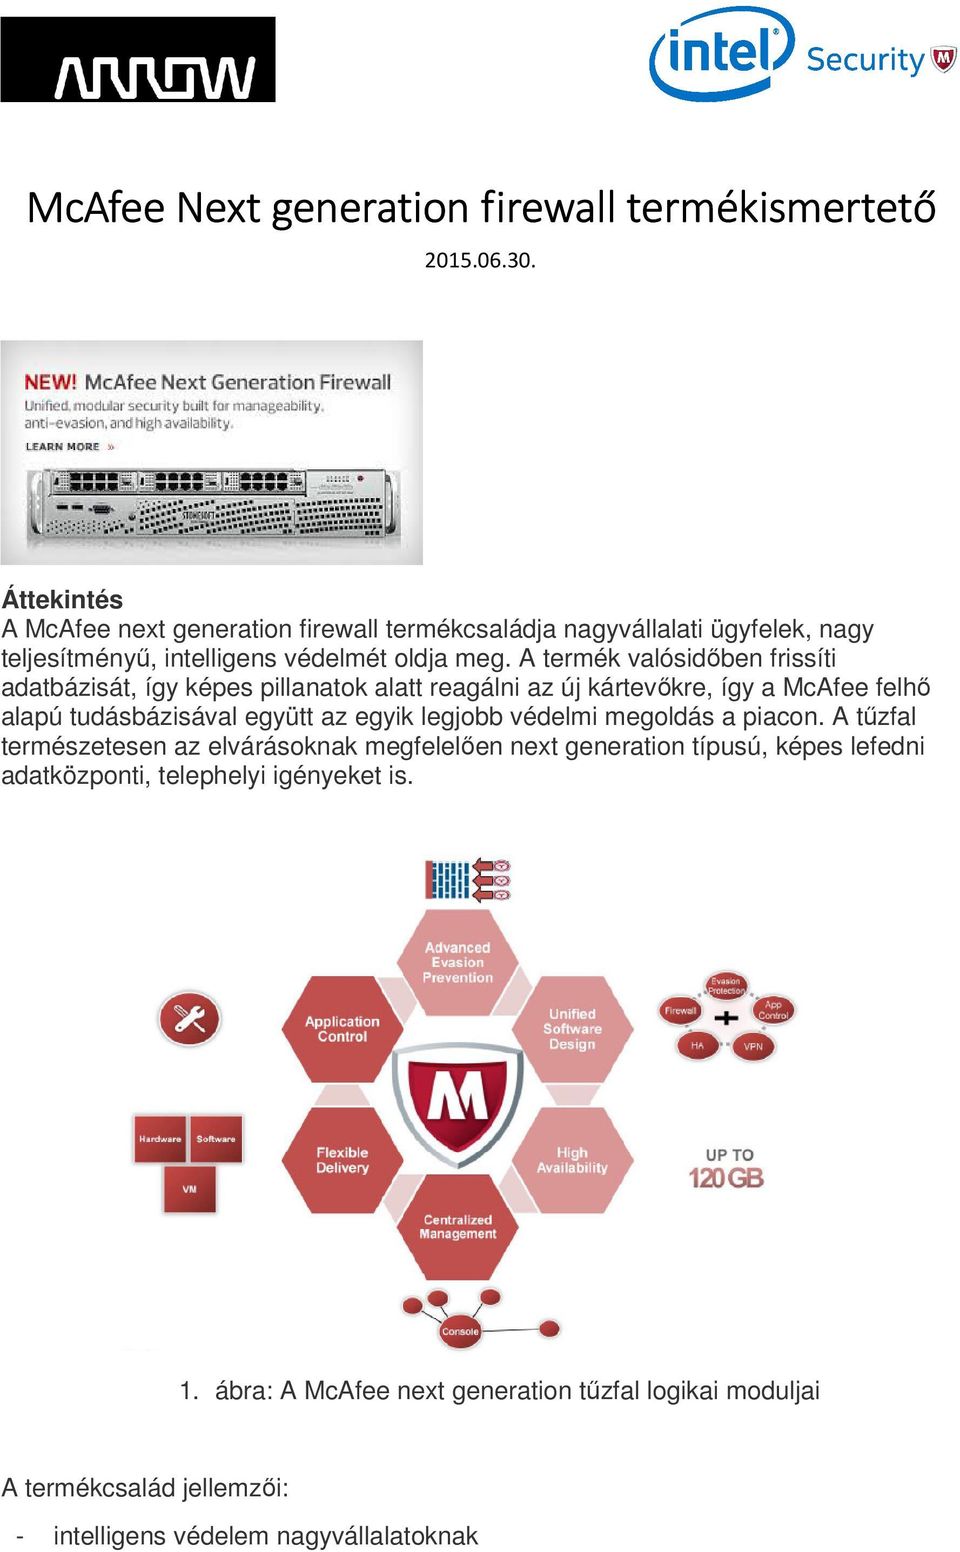 McAfee Next generation firewall termékismertető - PDF Ingyenes letöltés